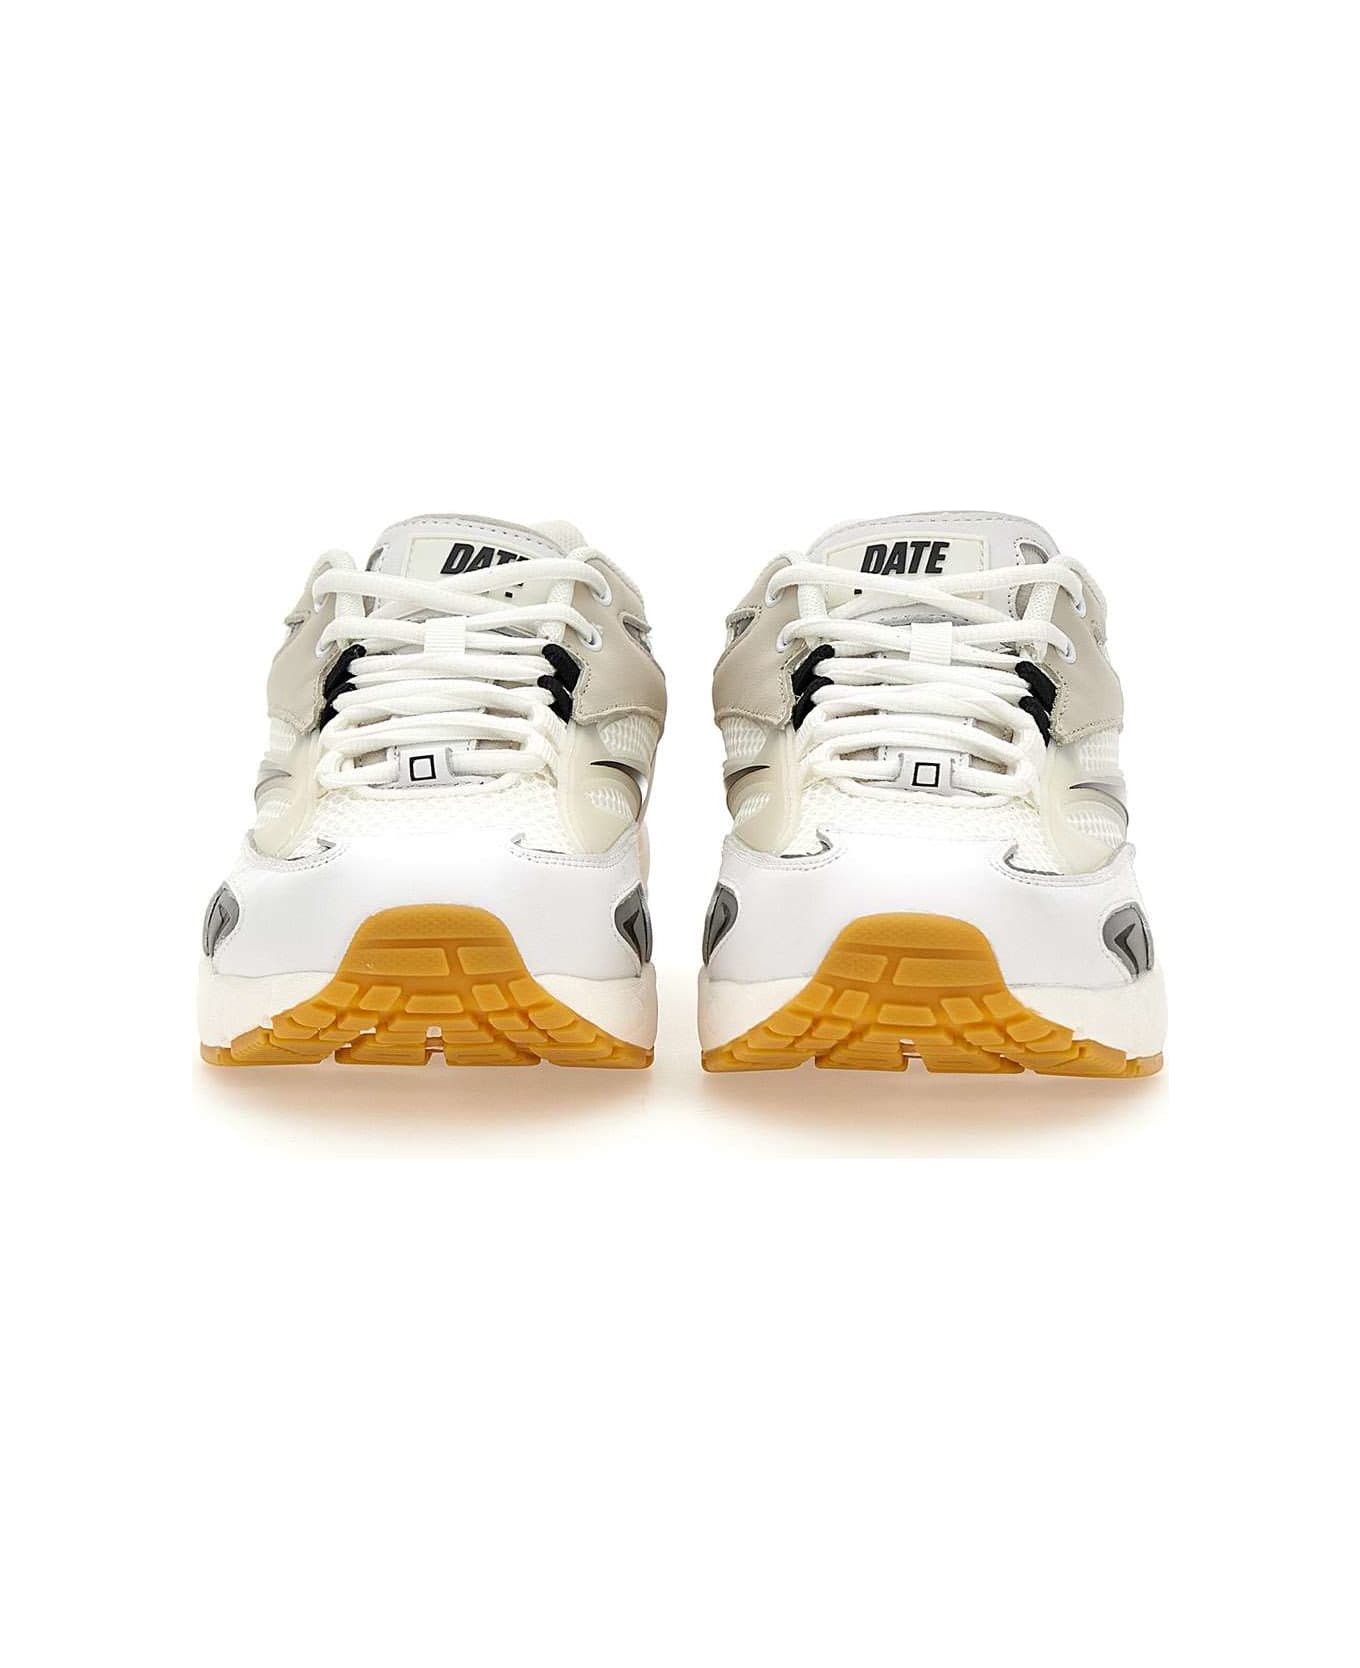 D.A.T.E. Men's Sneakers "sn23 Mesh", - WHITE